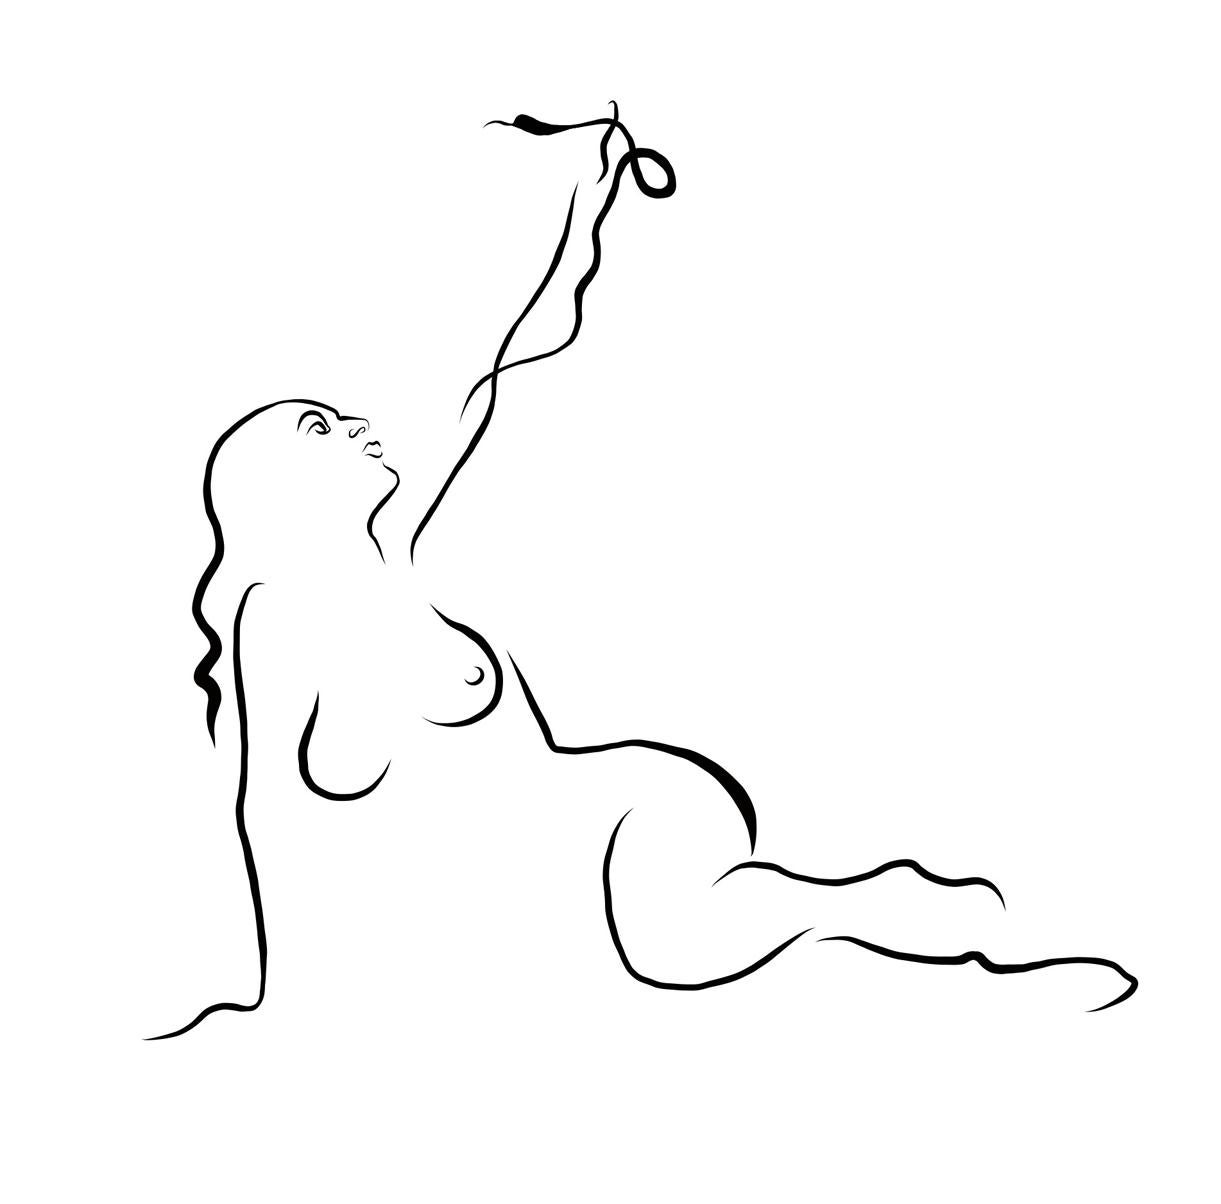 Michael Binkley Nude Print – Haiku #6, 1/50, Haiku  Digital Vector B&W Zeichnung weiblicher Akt-Frauenfigur mit Schlange, Digital Vector B&W